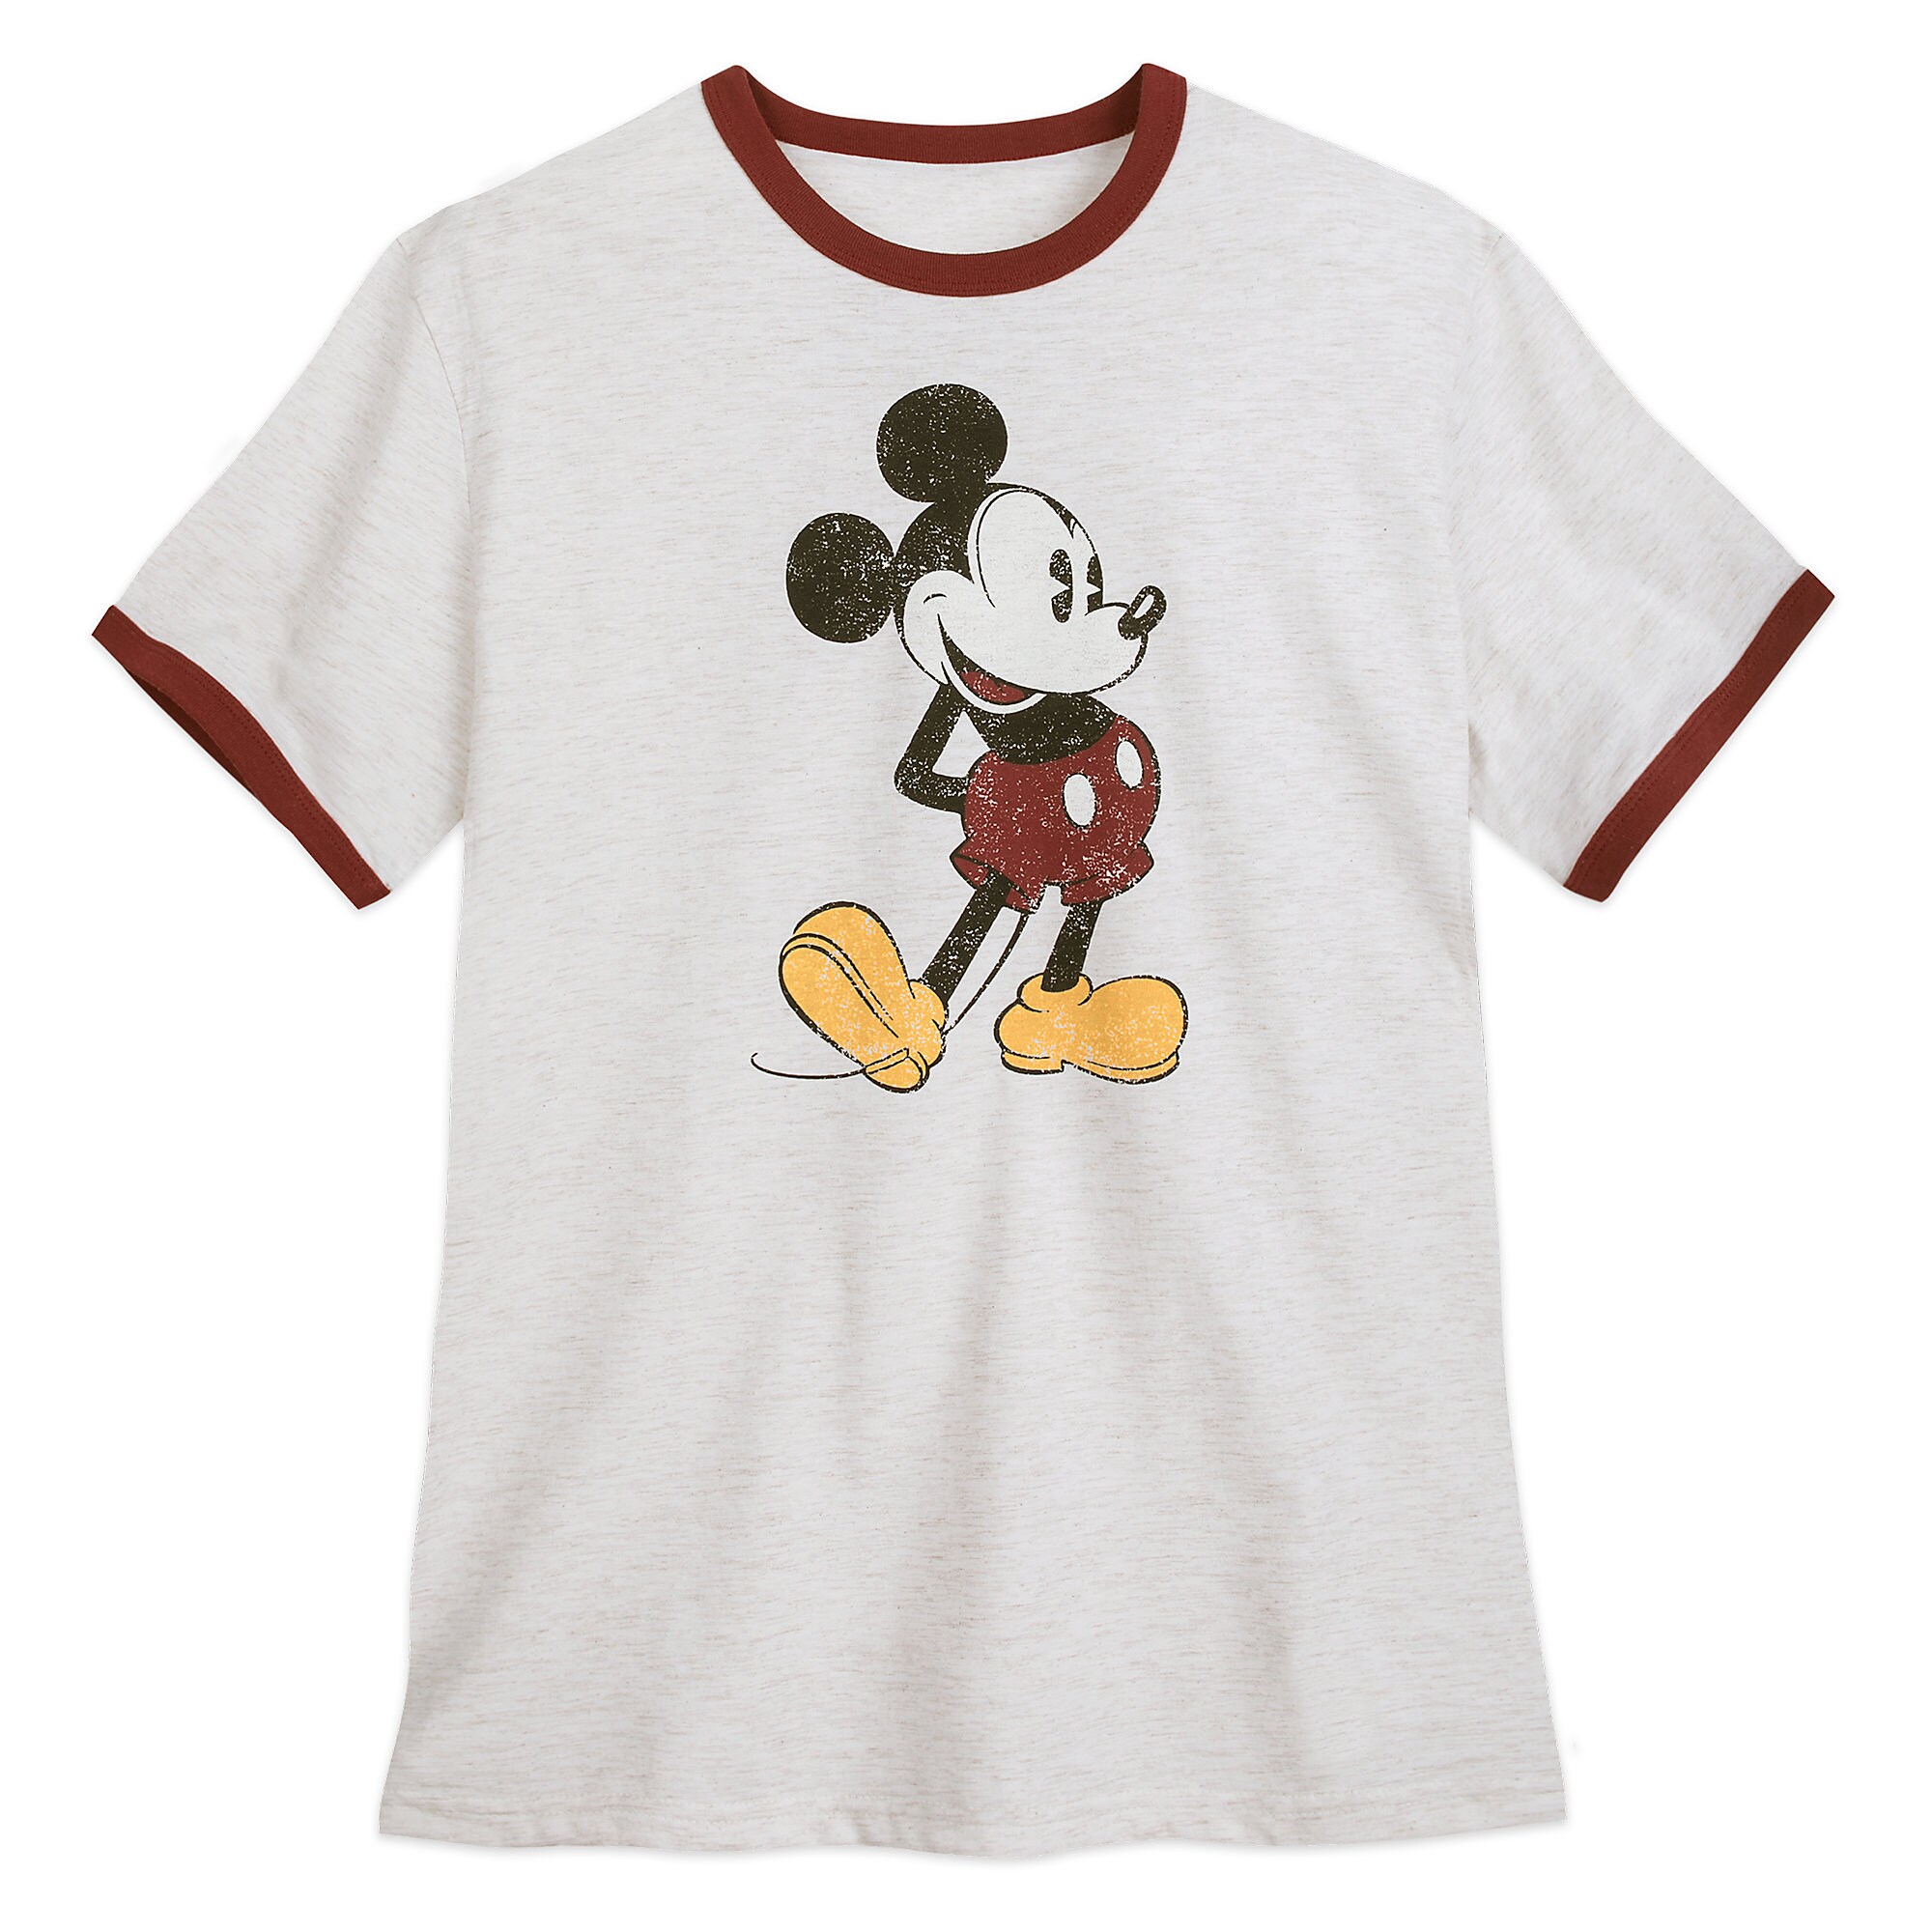 Mickey Mouse Ringer T-Shirt for Men